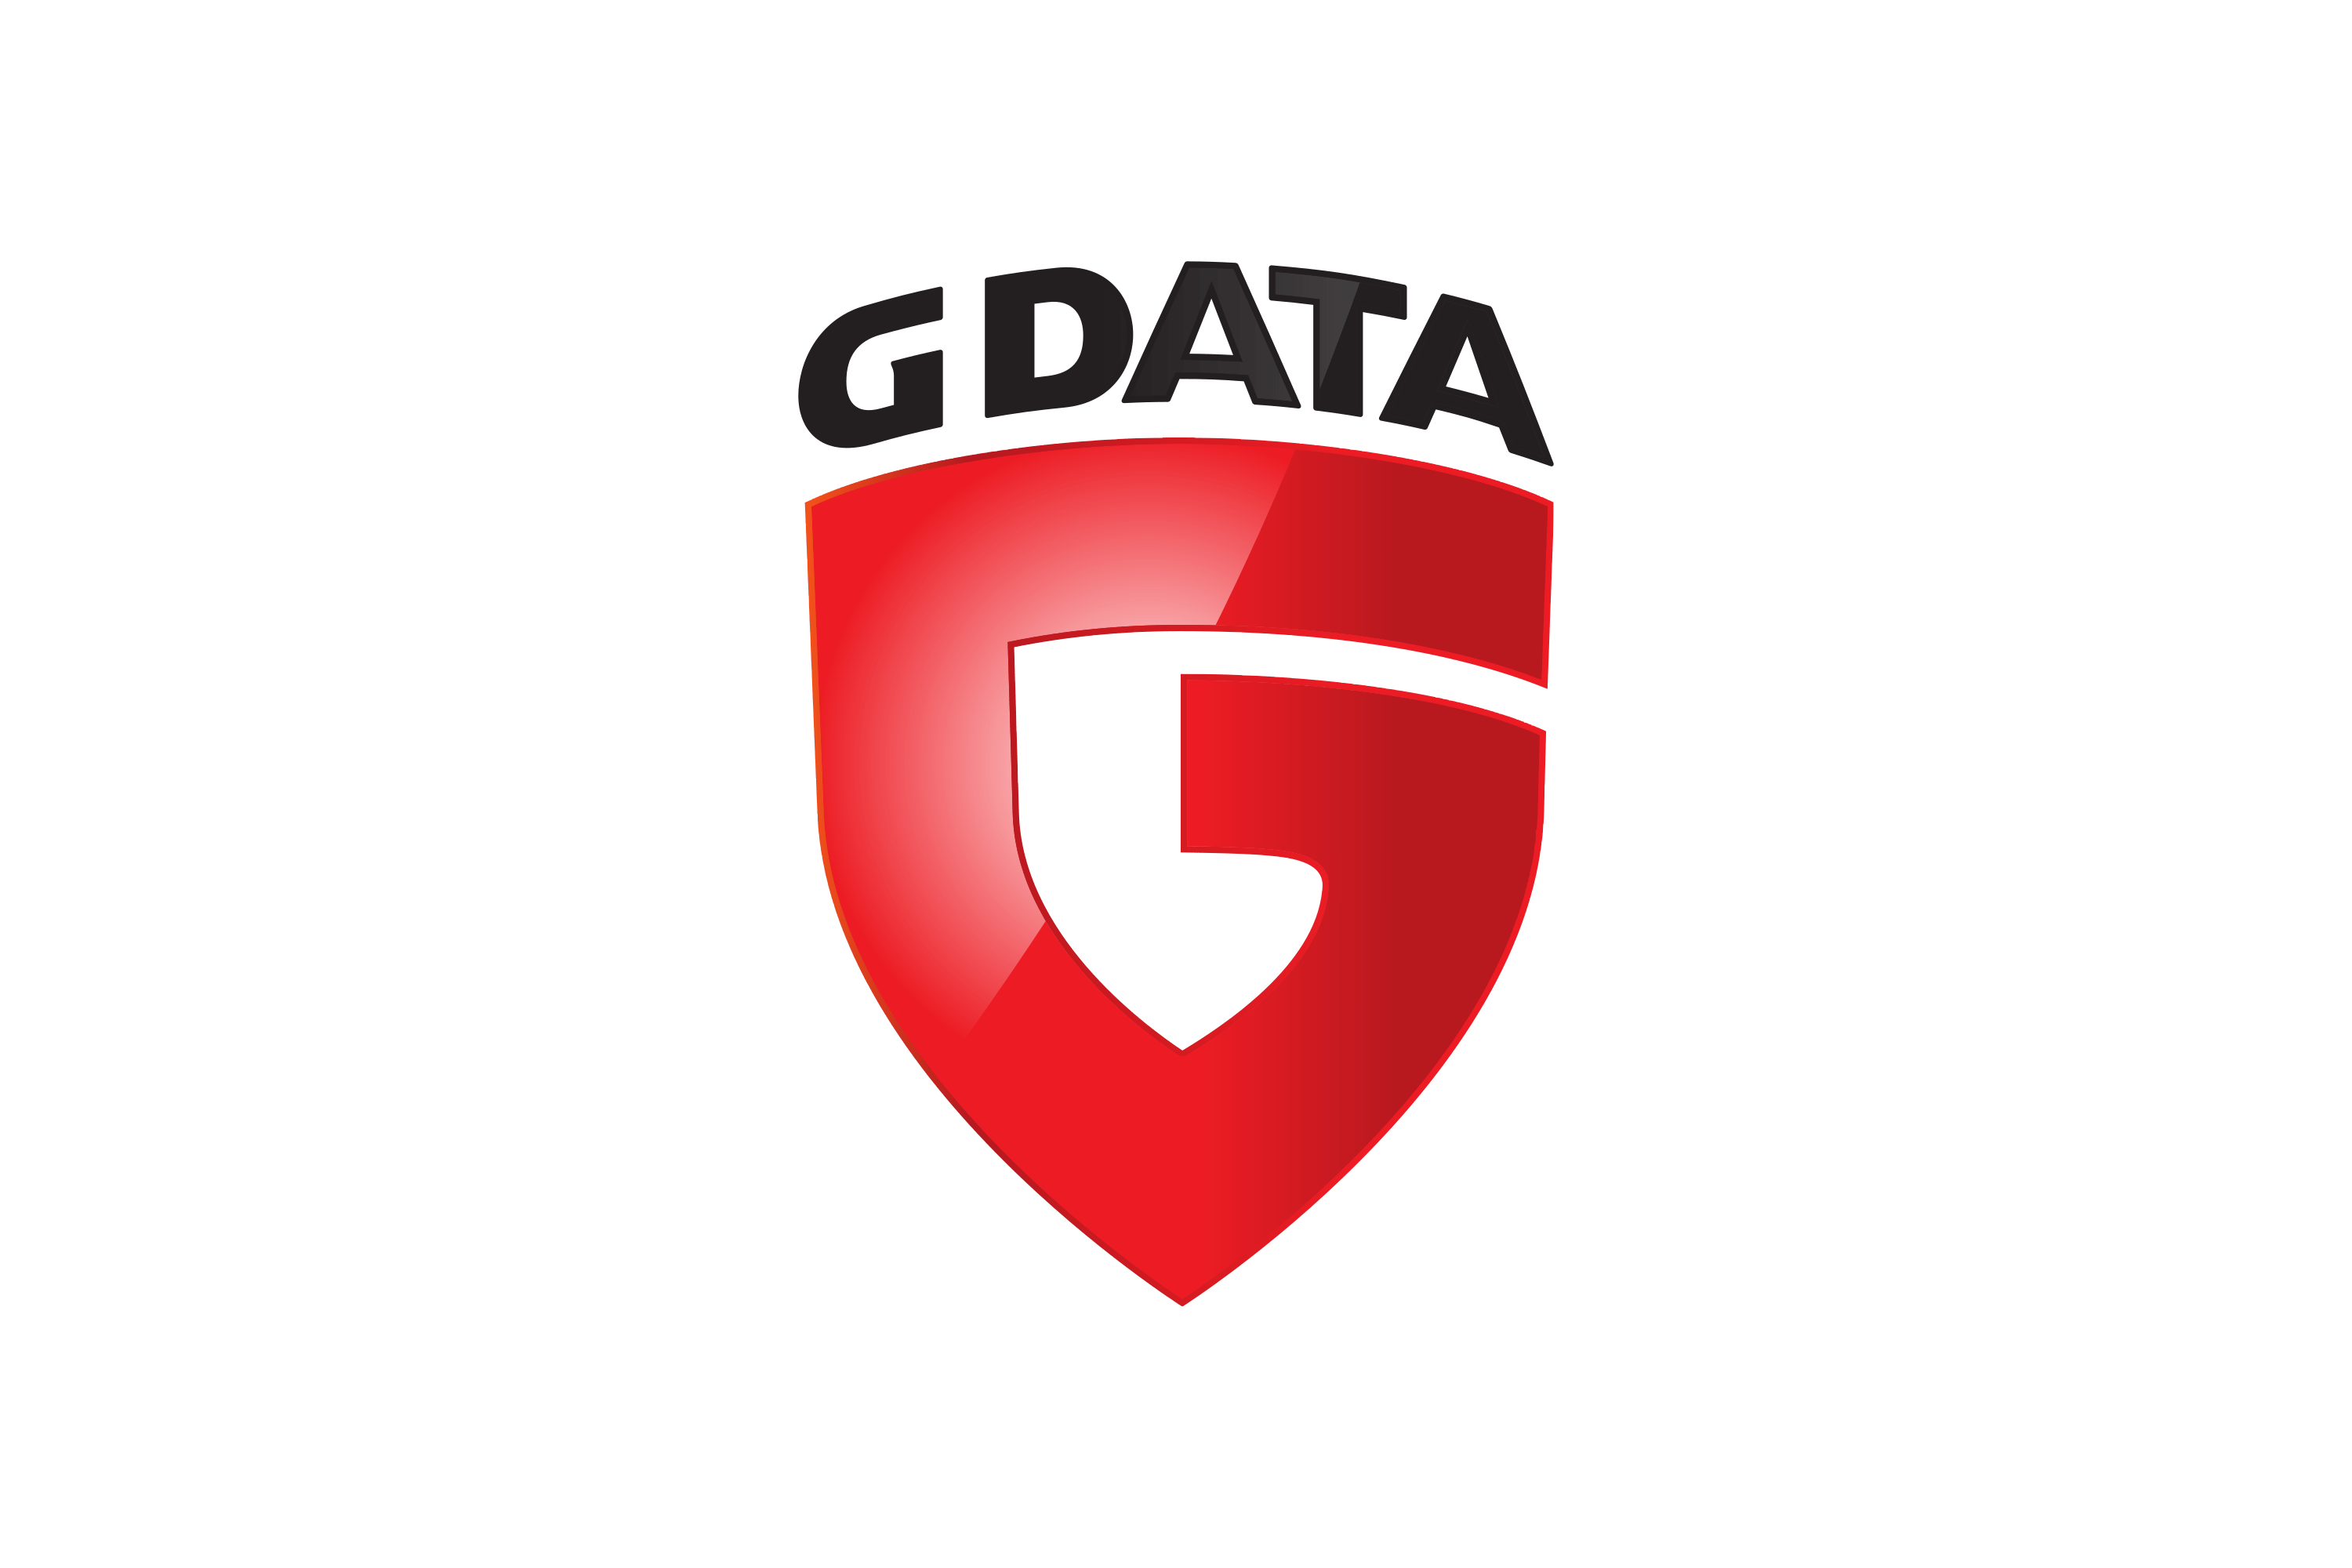 Download G Data Logo in SVG Vector or PNG File Format - Logo.wine